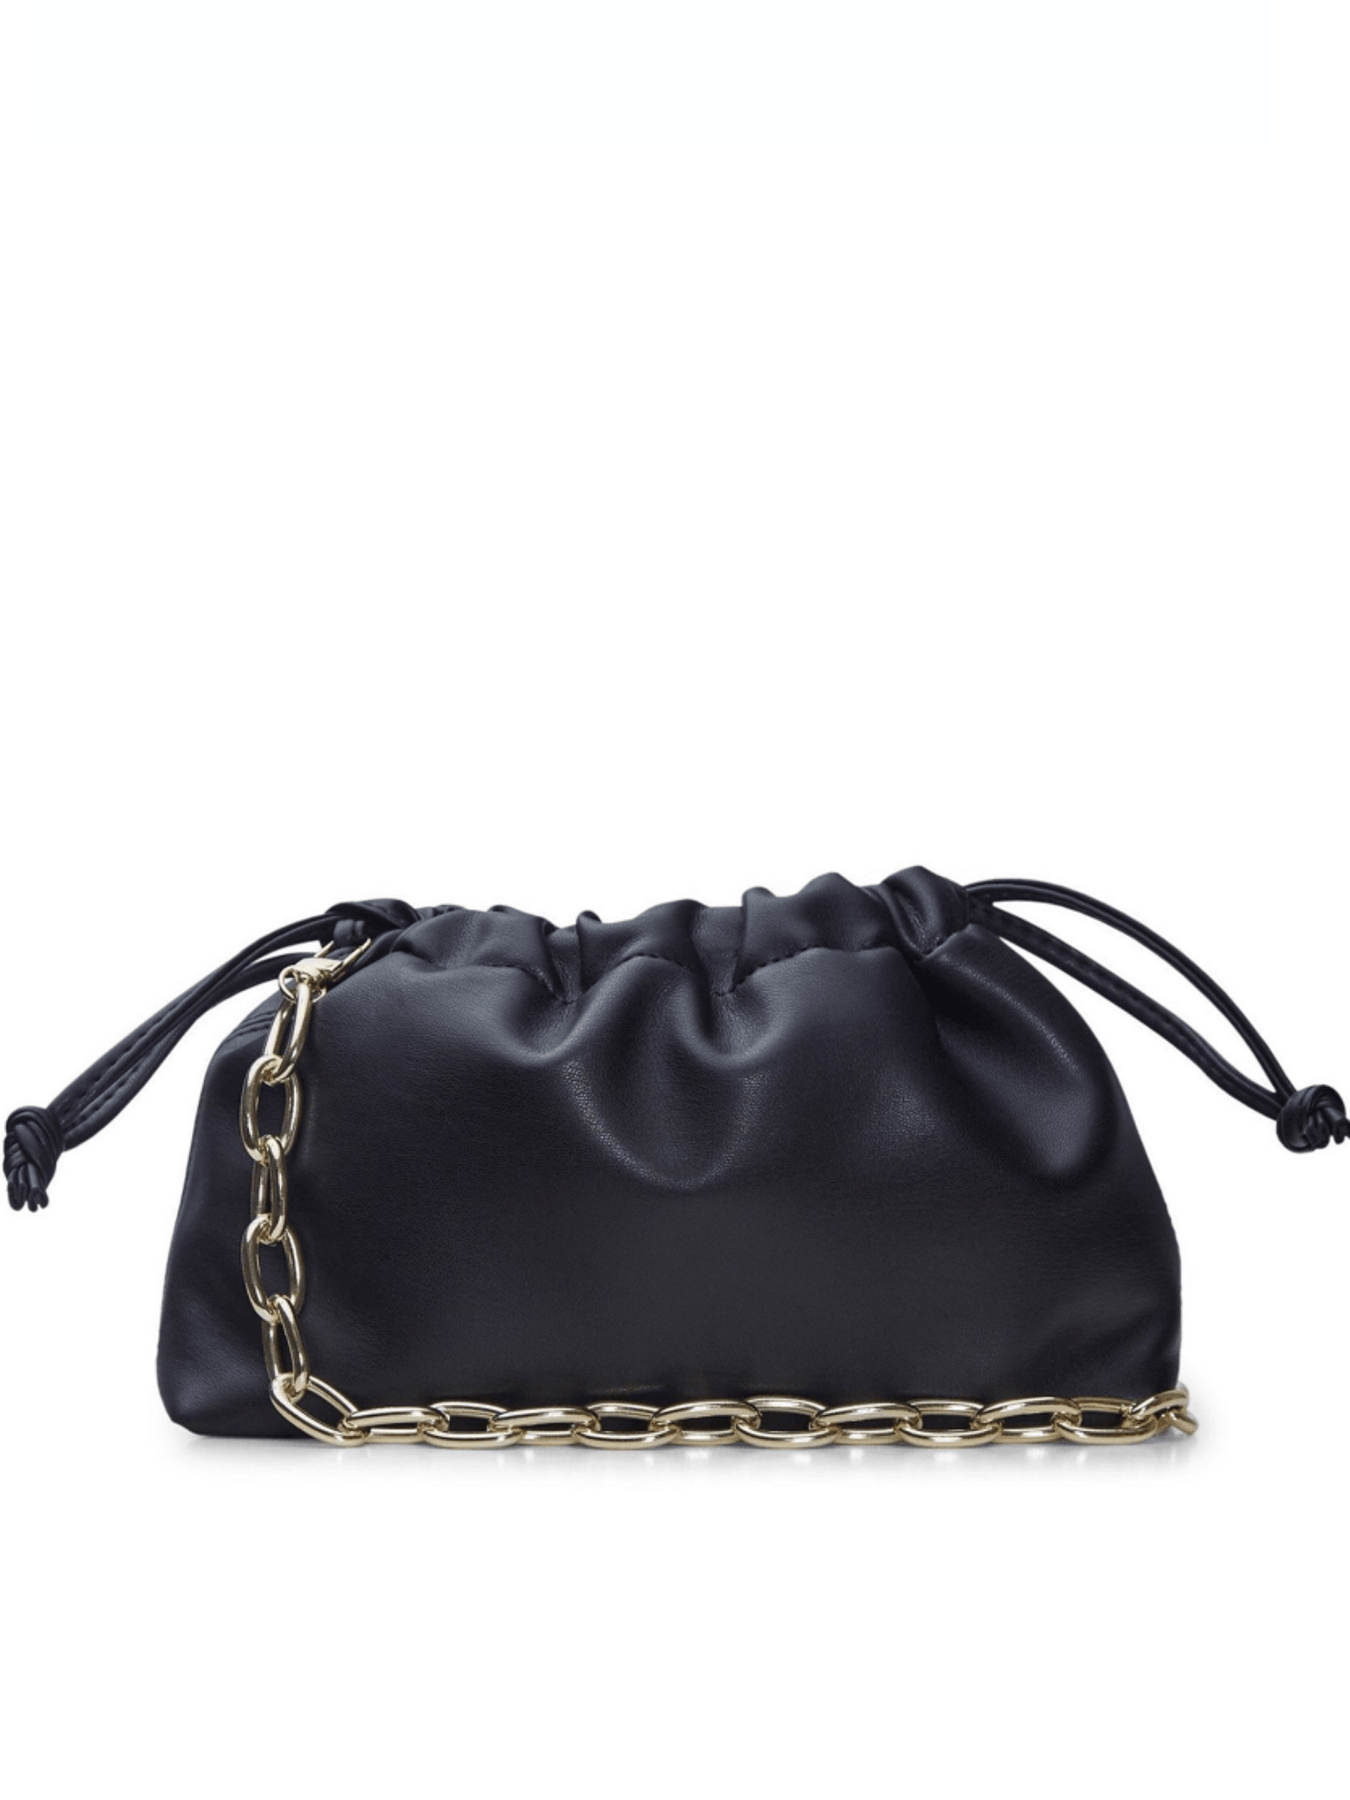 Buy Miss Lulu Leather Look V-Shape Shoulder Handbag (Gray) at